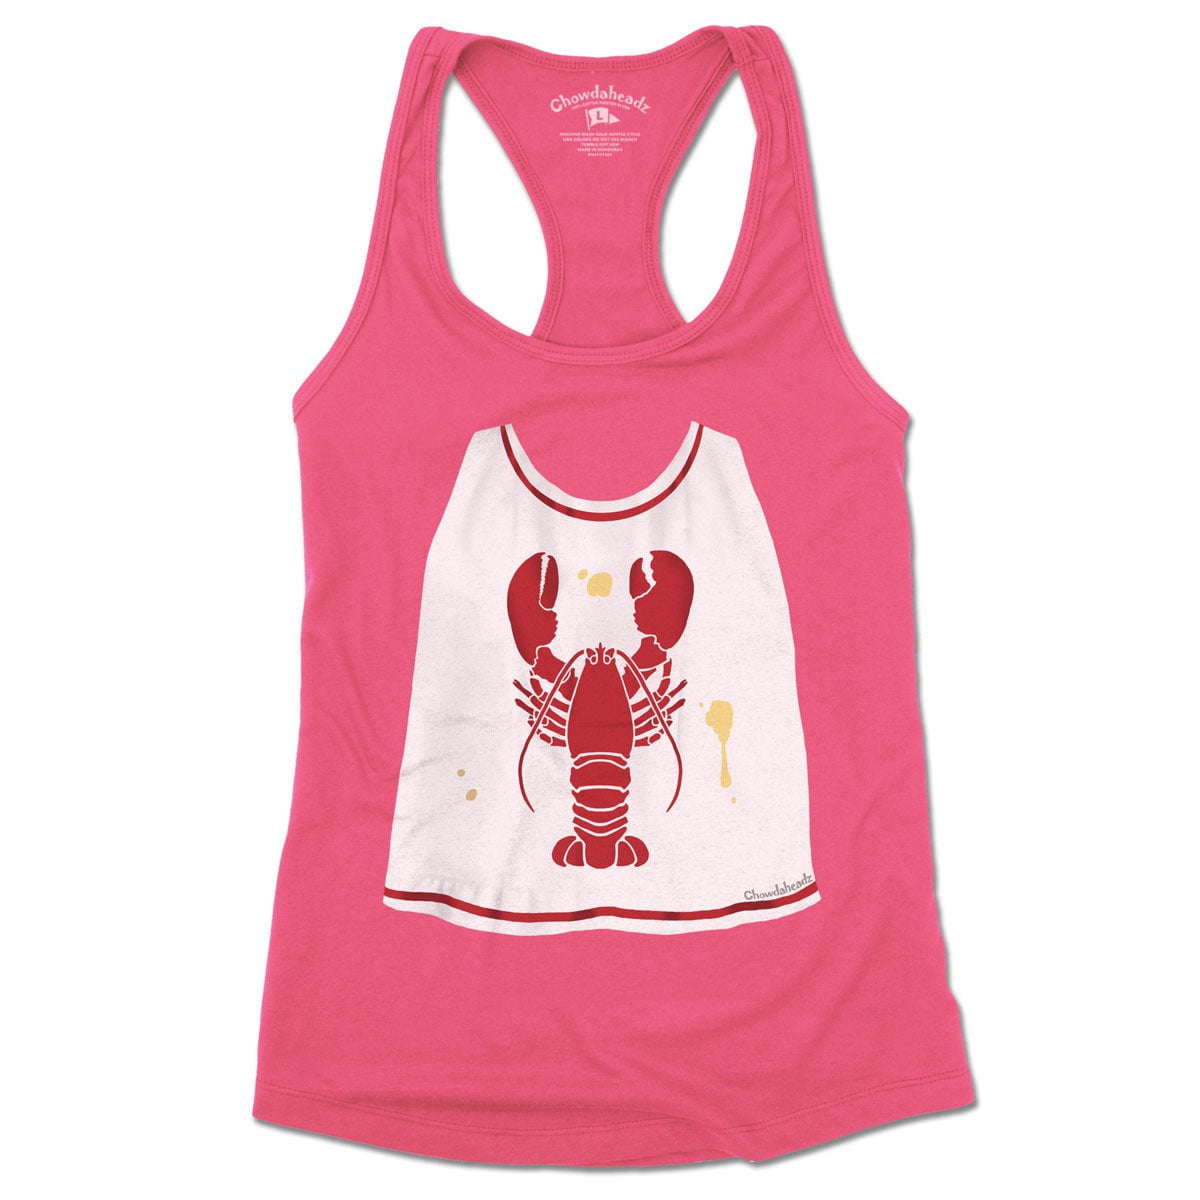 Lobster Bib Women's Tank Top - Chowdaheadz